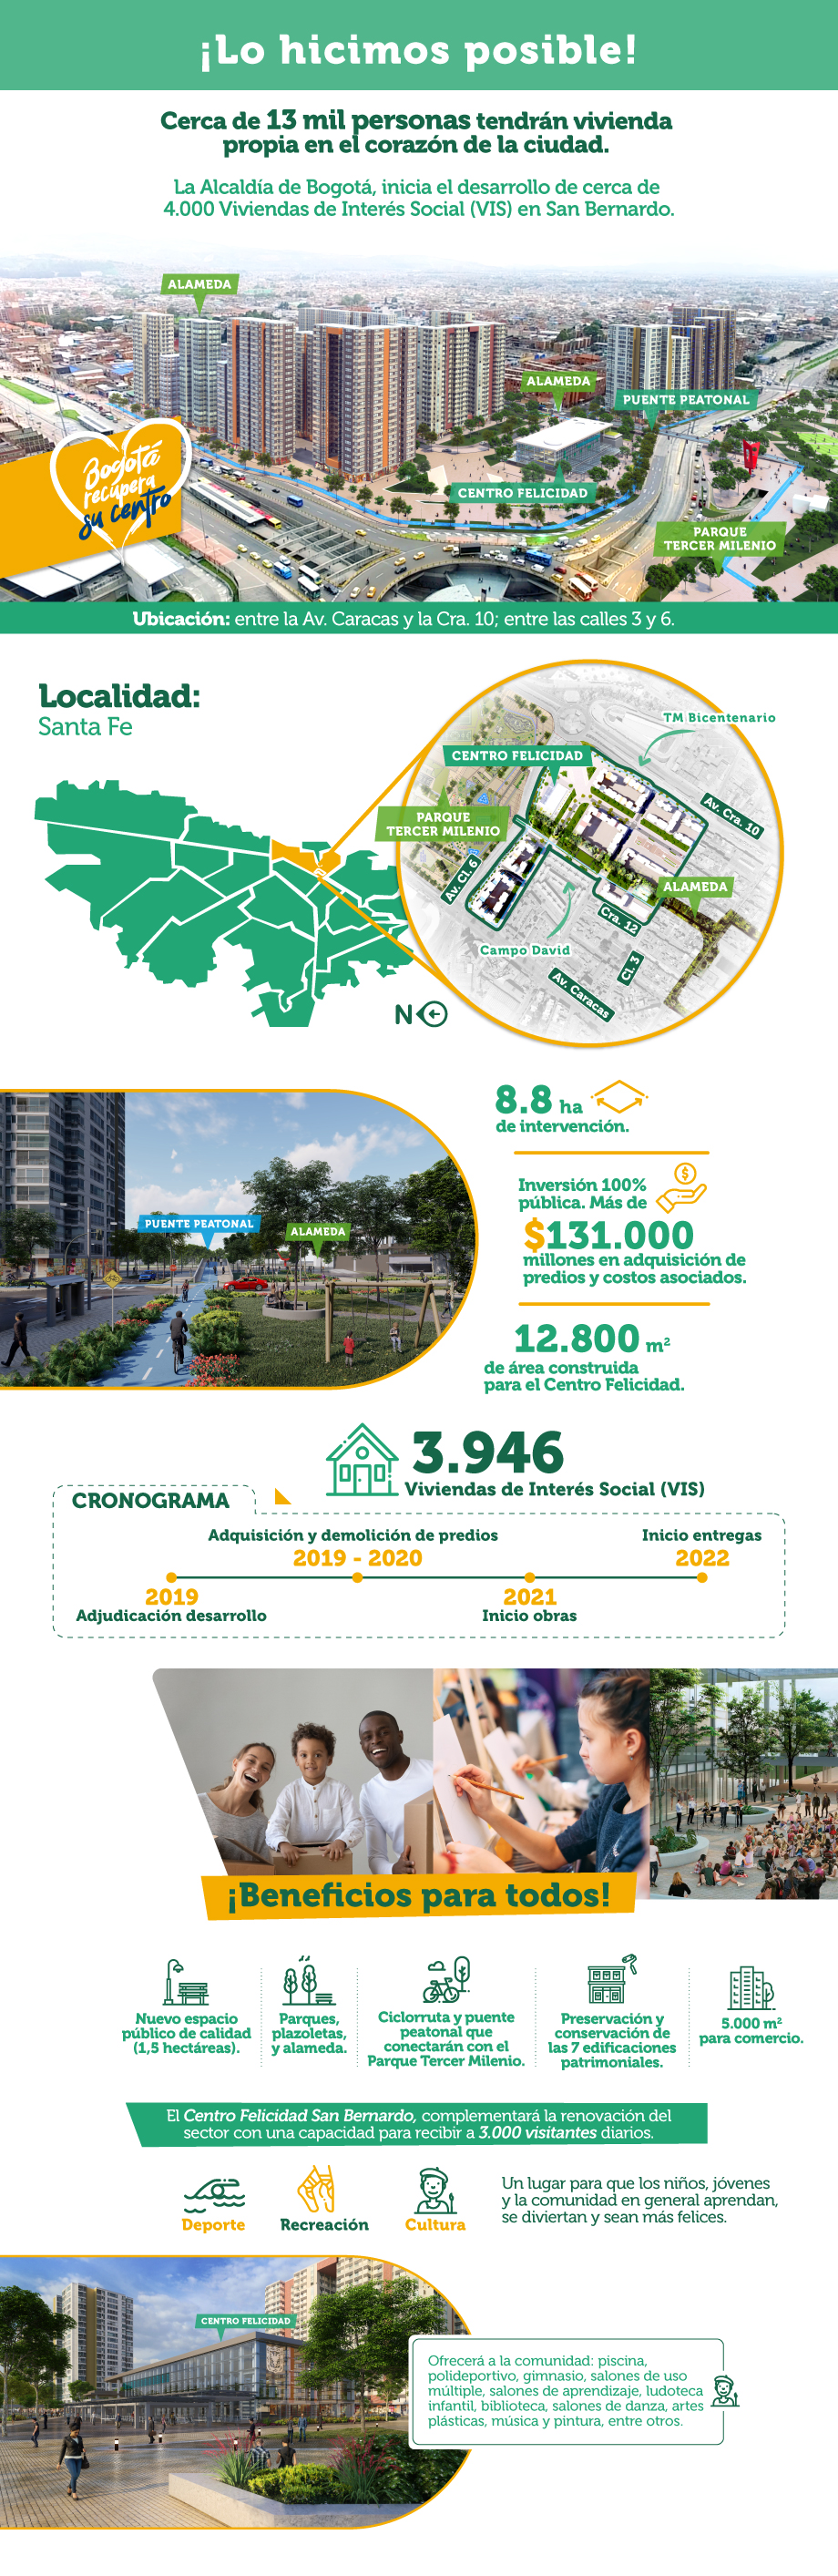 Infografía del Proyecto San Bernardo - Tercer Milenio